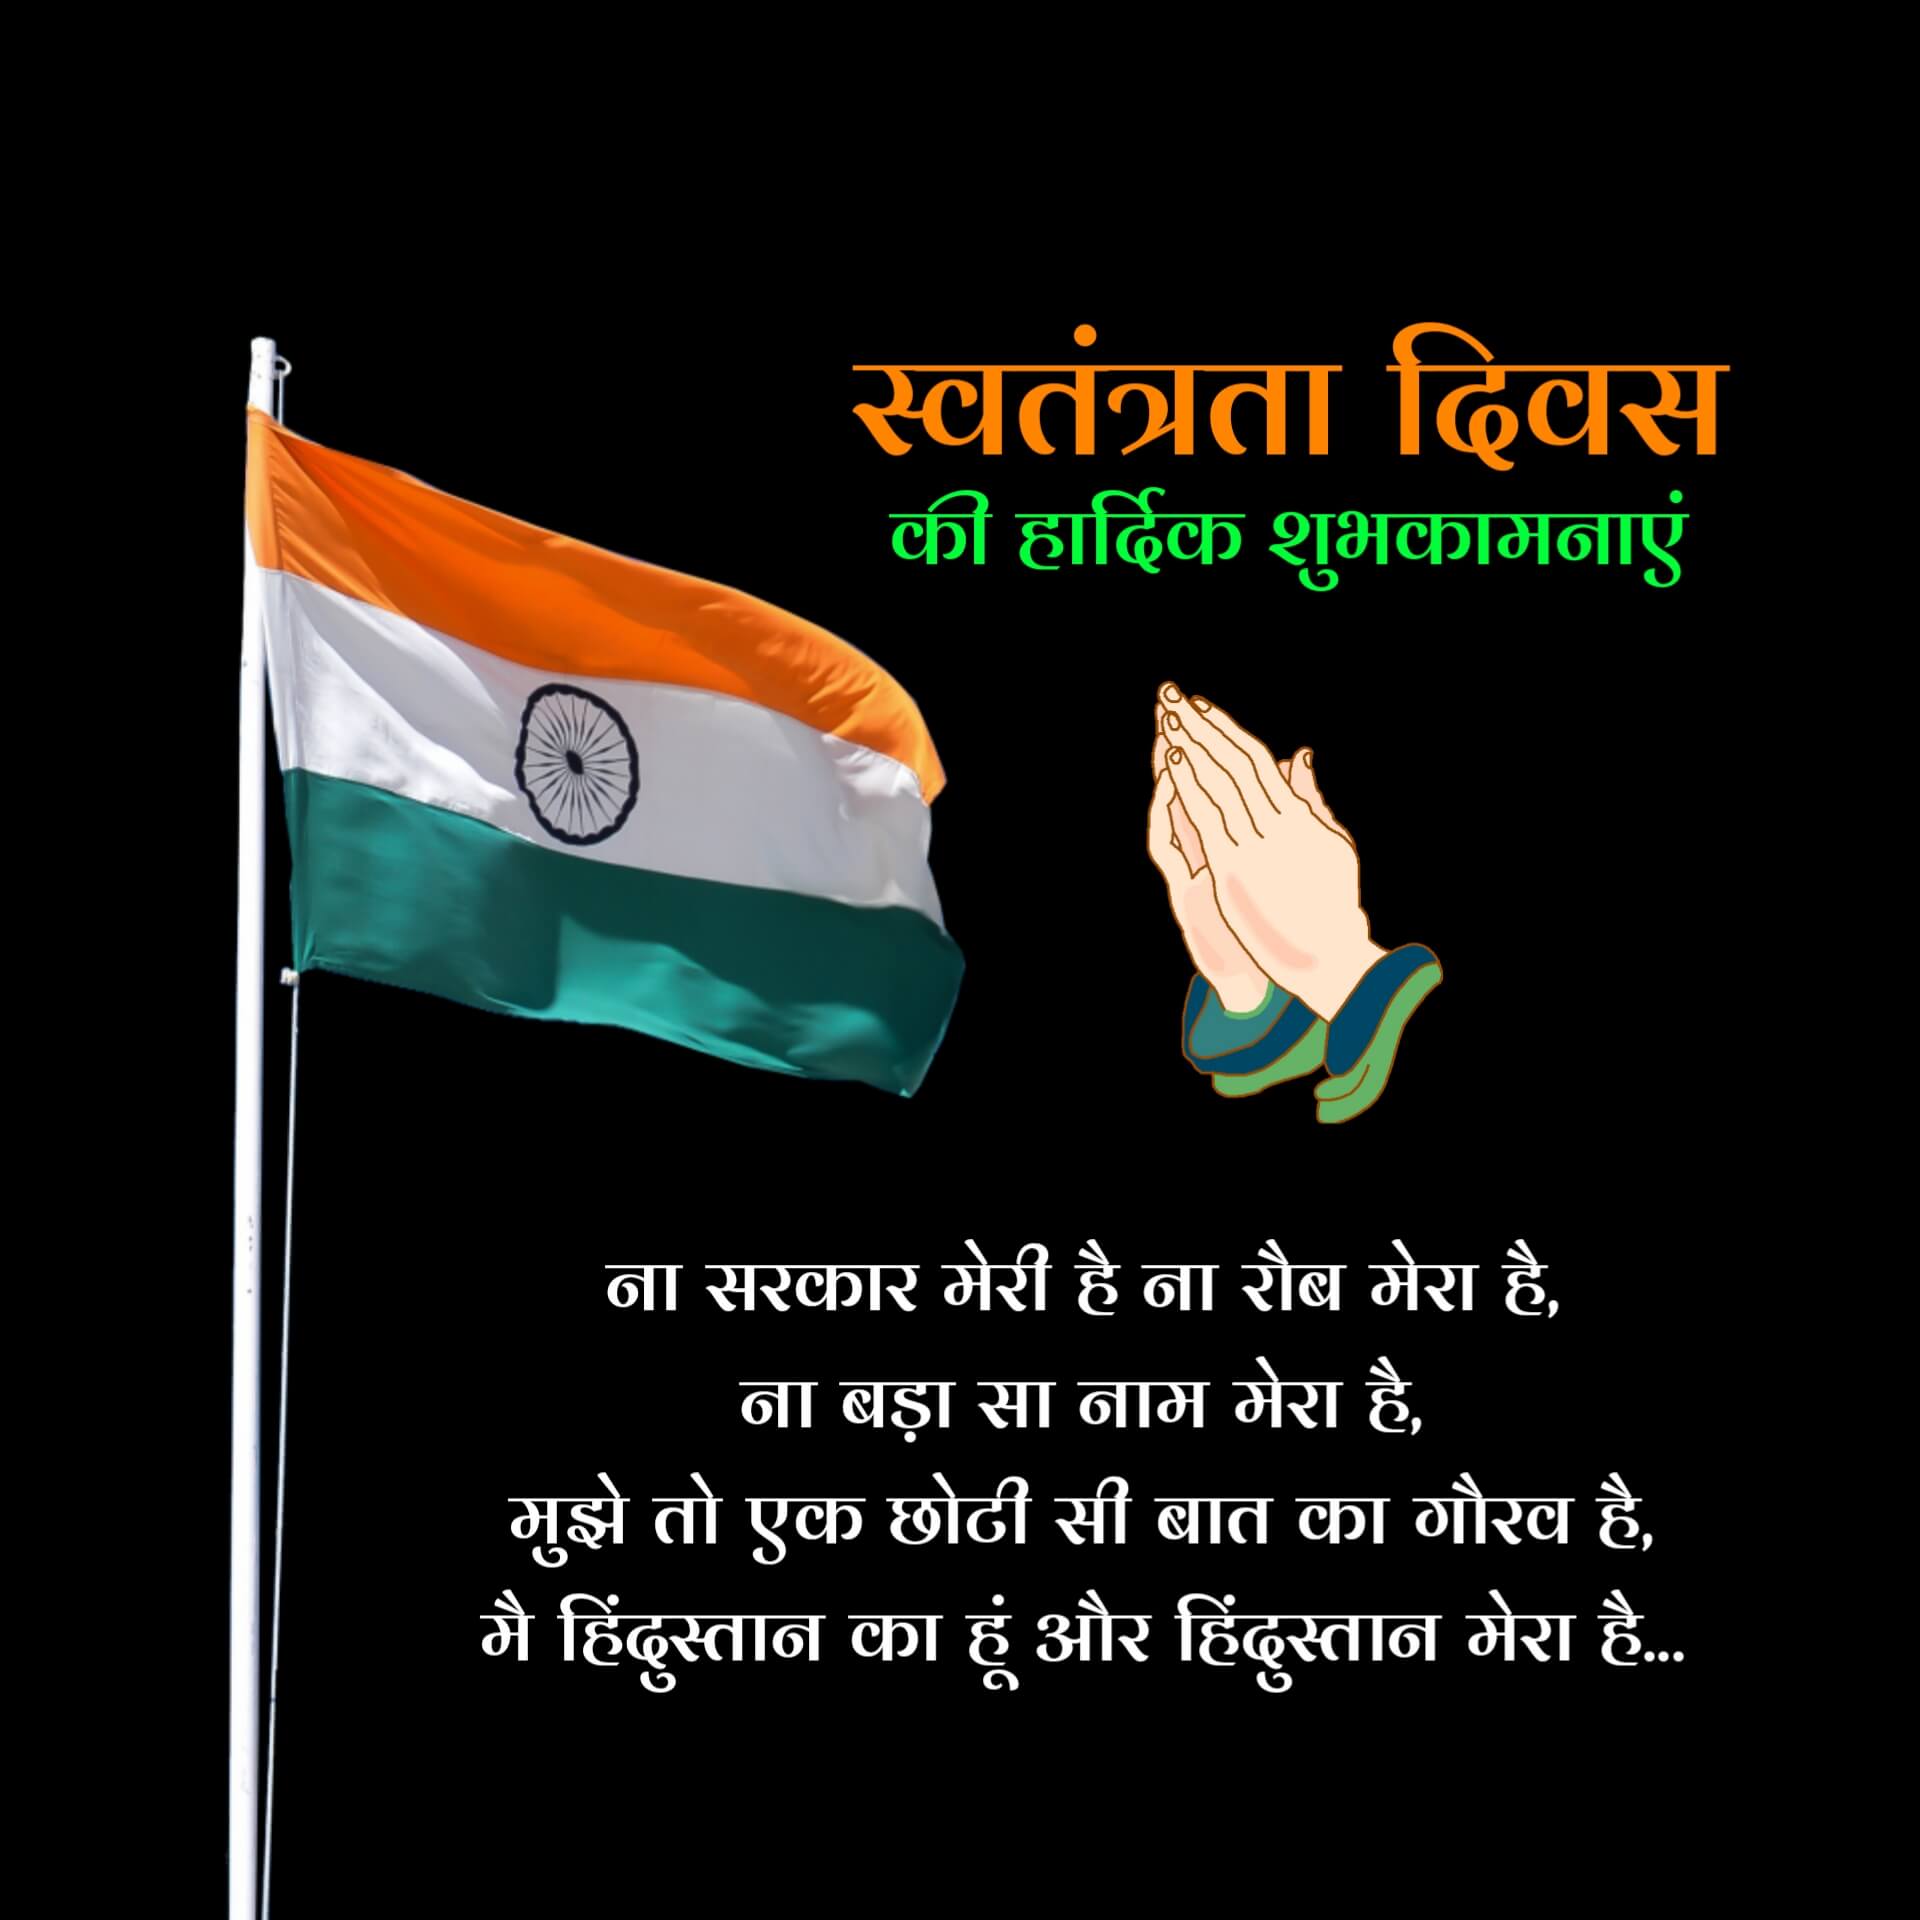 Hindi Independence Day Shayari